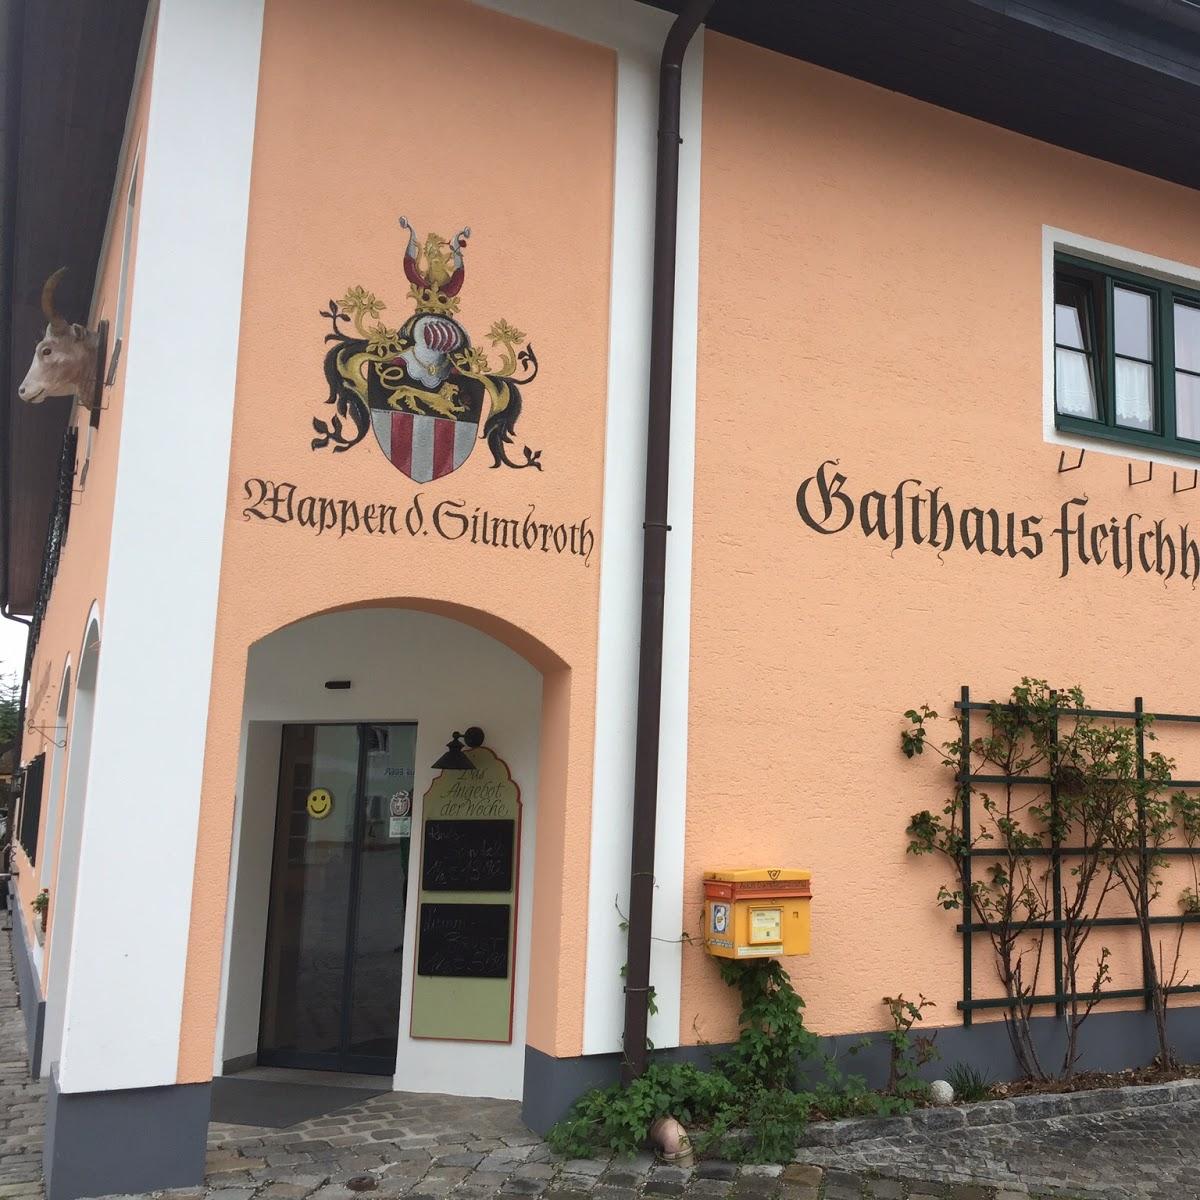 Restaurant "Gasthaus und Fleischhauerei Silmbroth" in Scharnstein